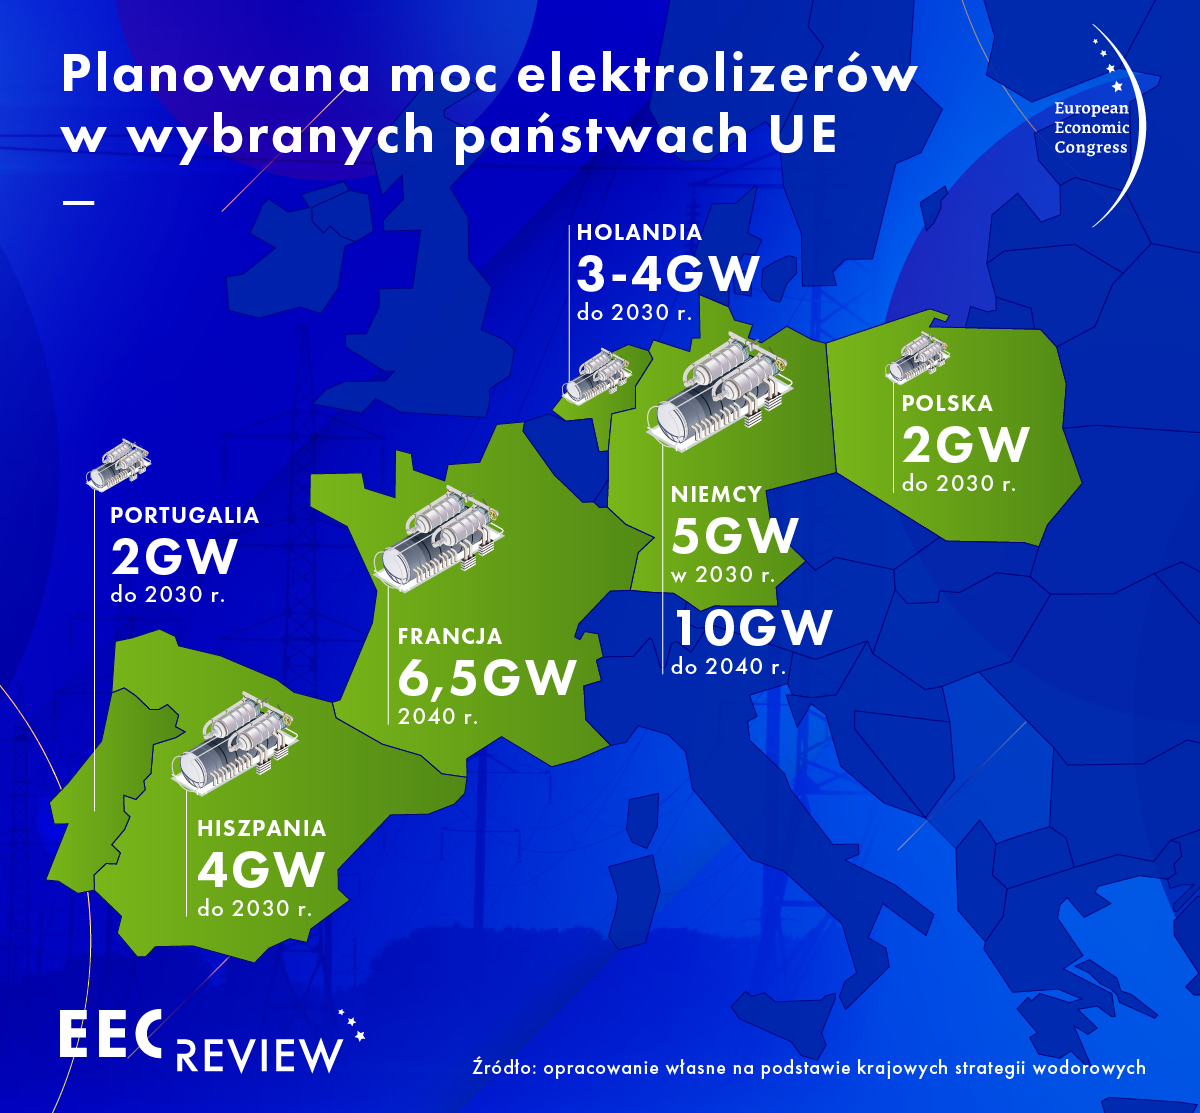 Planowana moc elektrolizerów (Źródło: Eurostat)